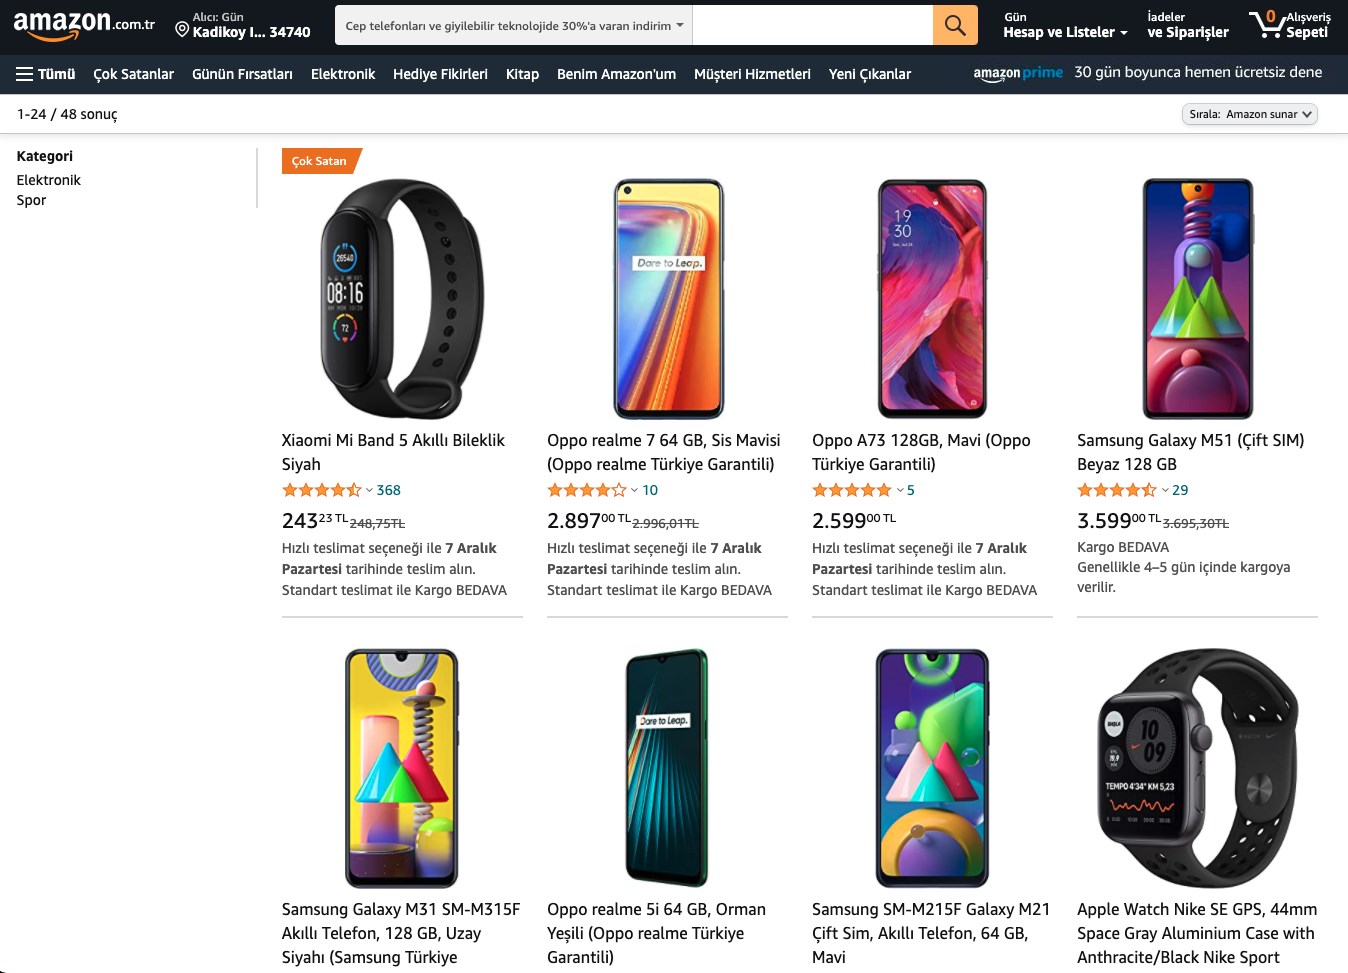 Amazon’da cep telefonu ve akıllı saat kategorisinde indirim var